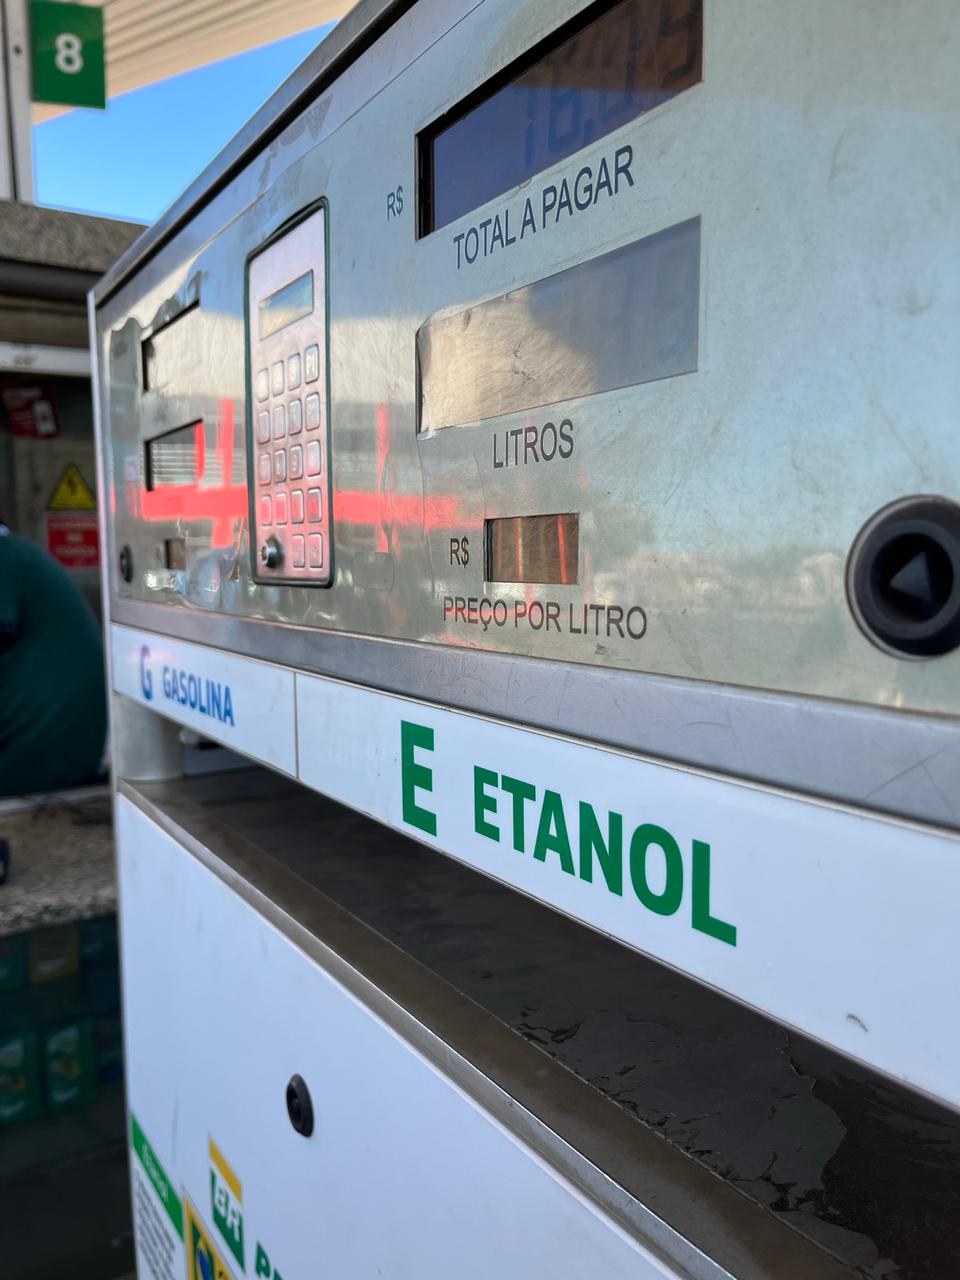 Etanol é a escolha mais econômica para consumidores em Minas Gerais